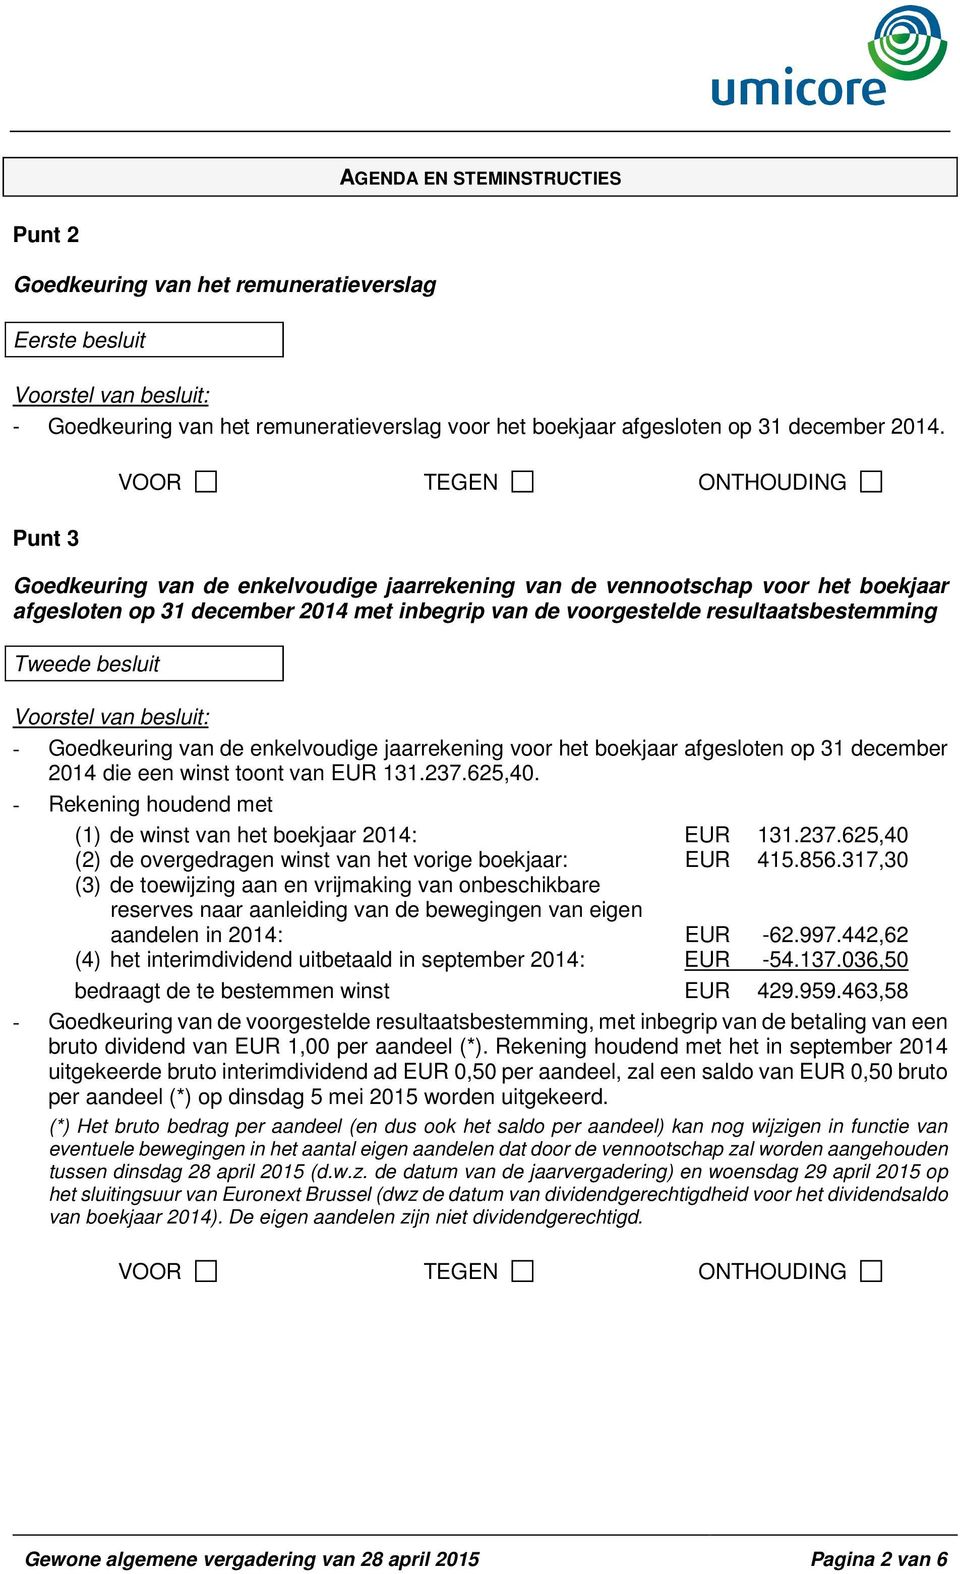 Goedkeuring van de enkelvoudige jaarrekening voor het boekjaar afgesloten op 31 december 2014 die een winst toont van EUR 131.237.625,40.